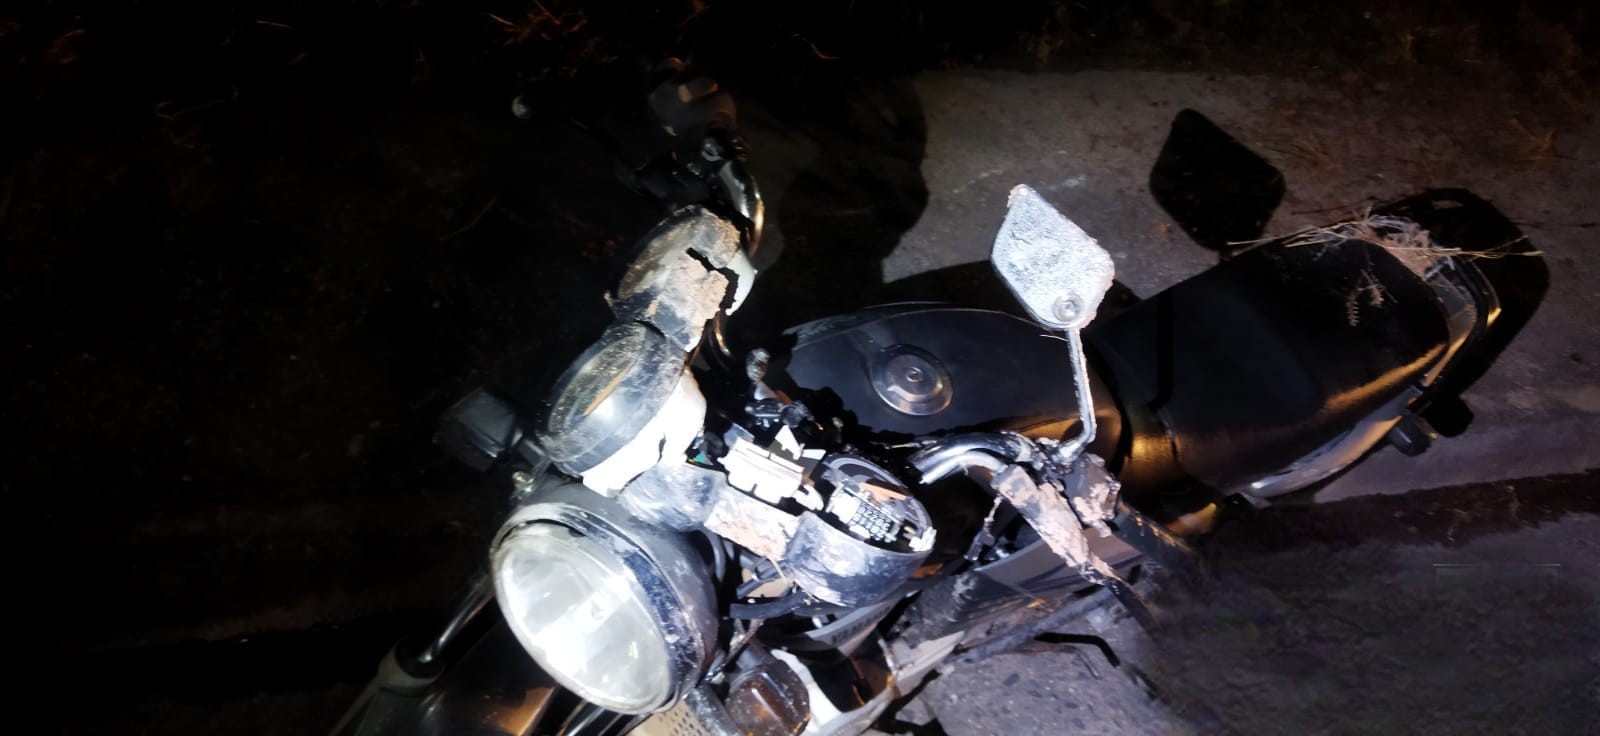 Motociclista morre em acidente na MG-050, em Divinópolis 